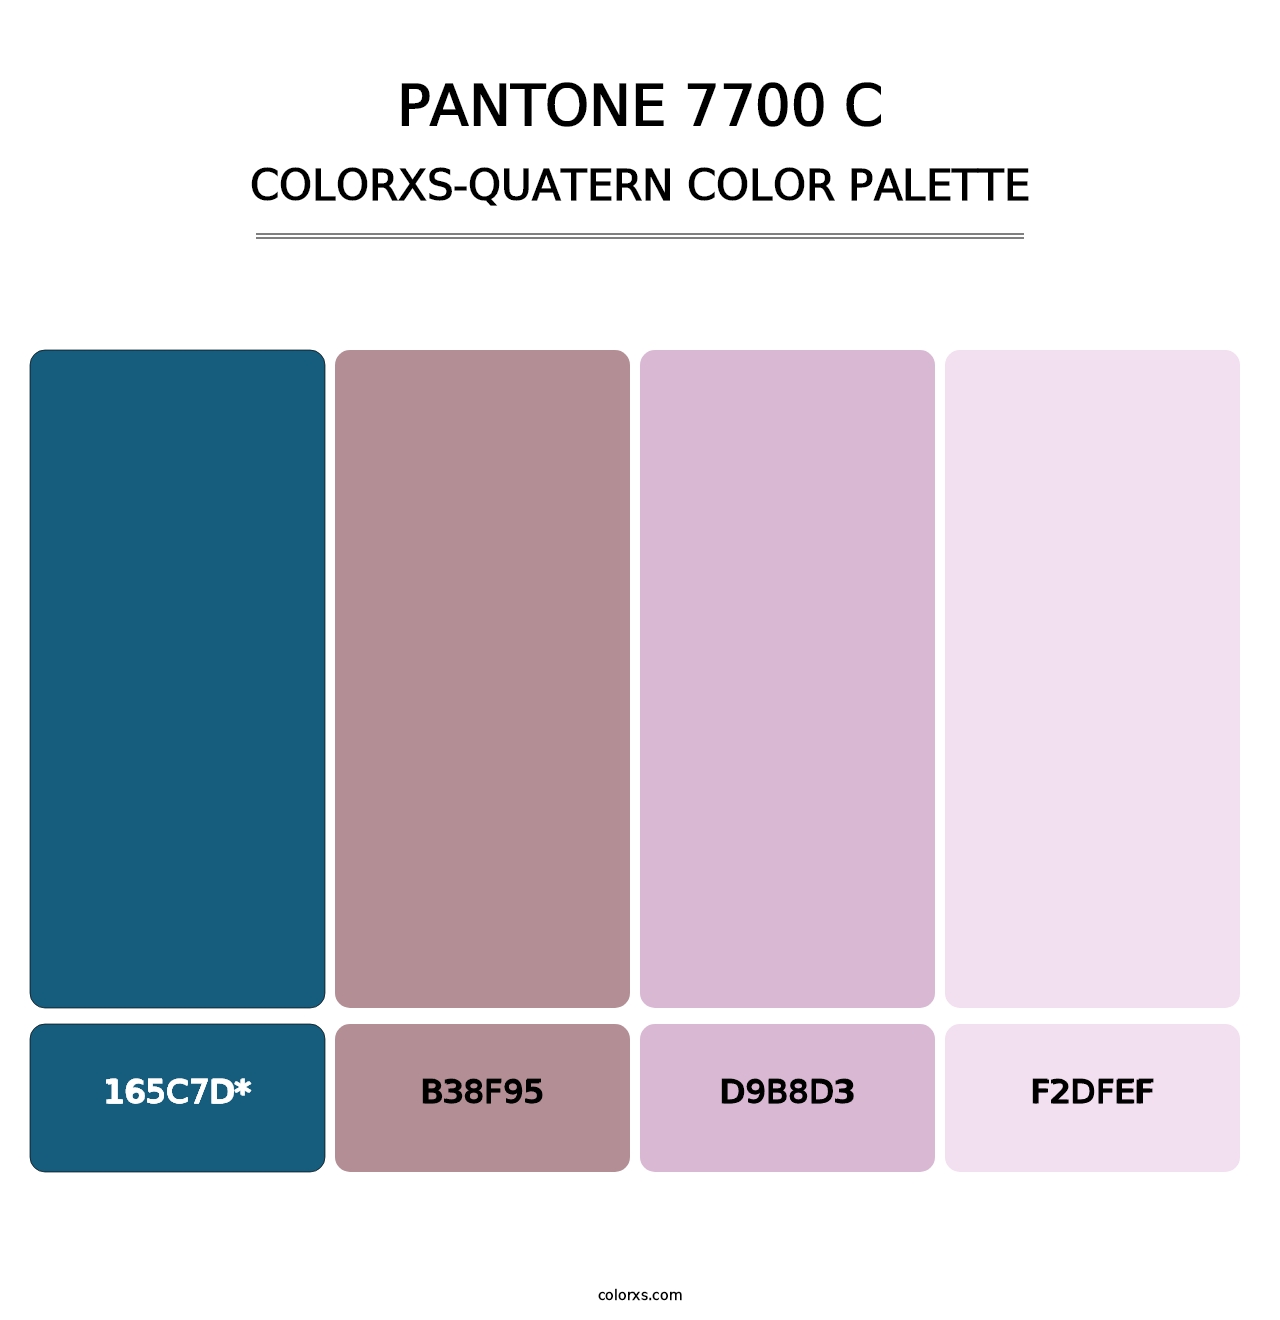 PANTONE 7700 C - Colorxs Quad Palette